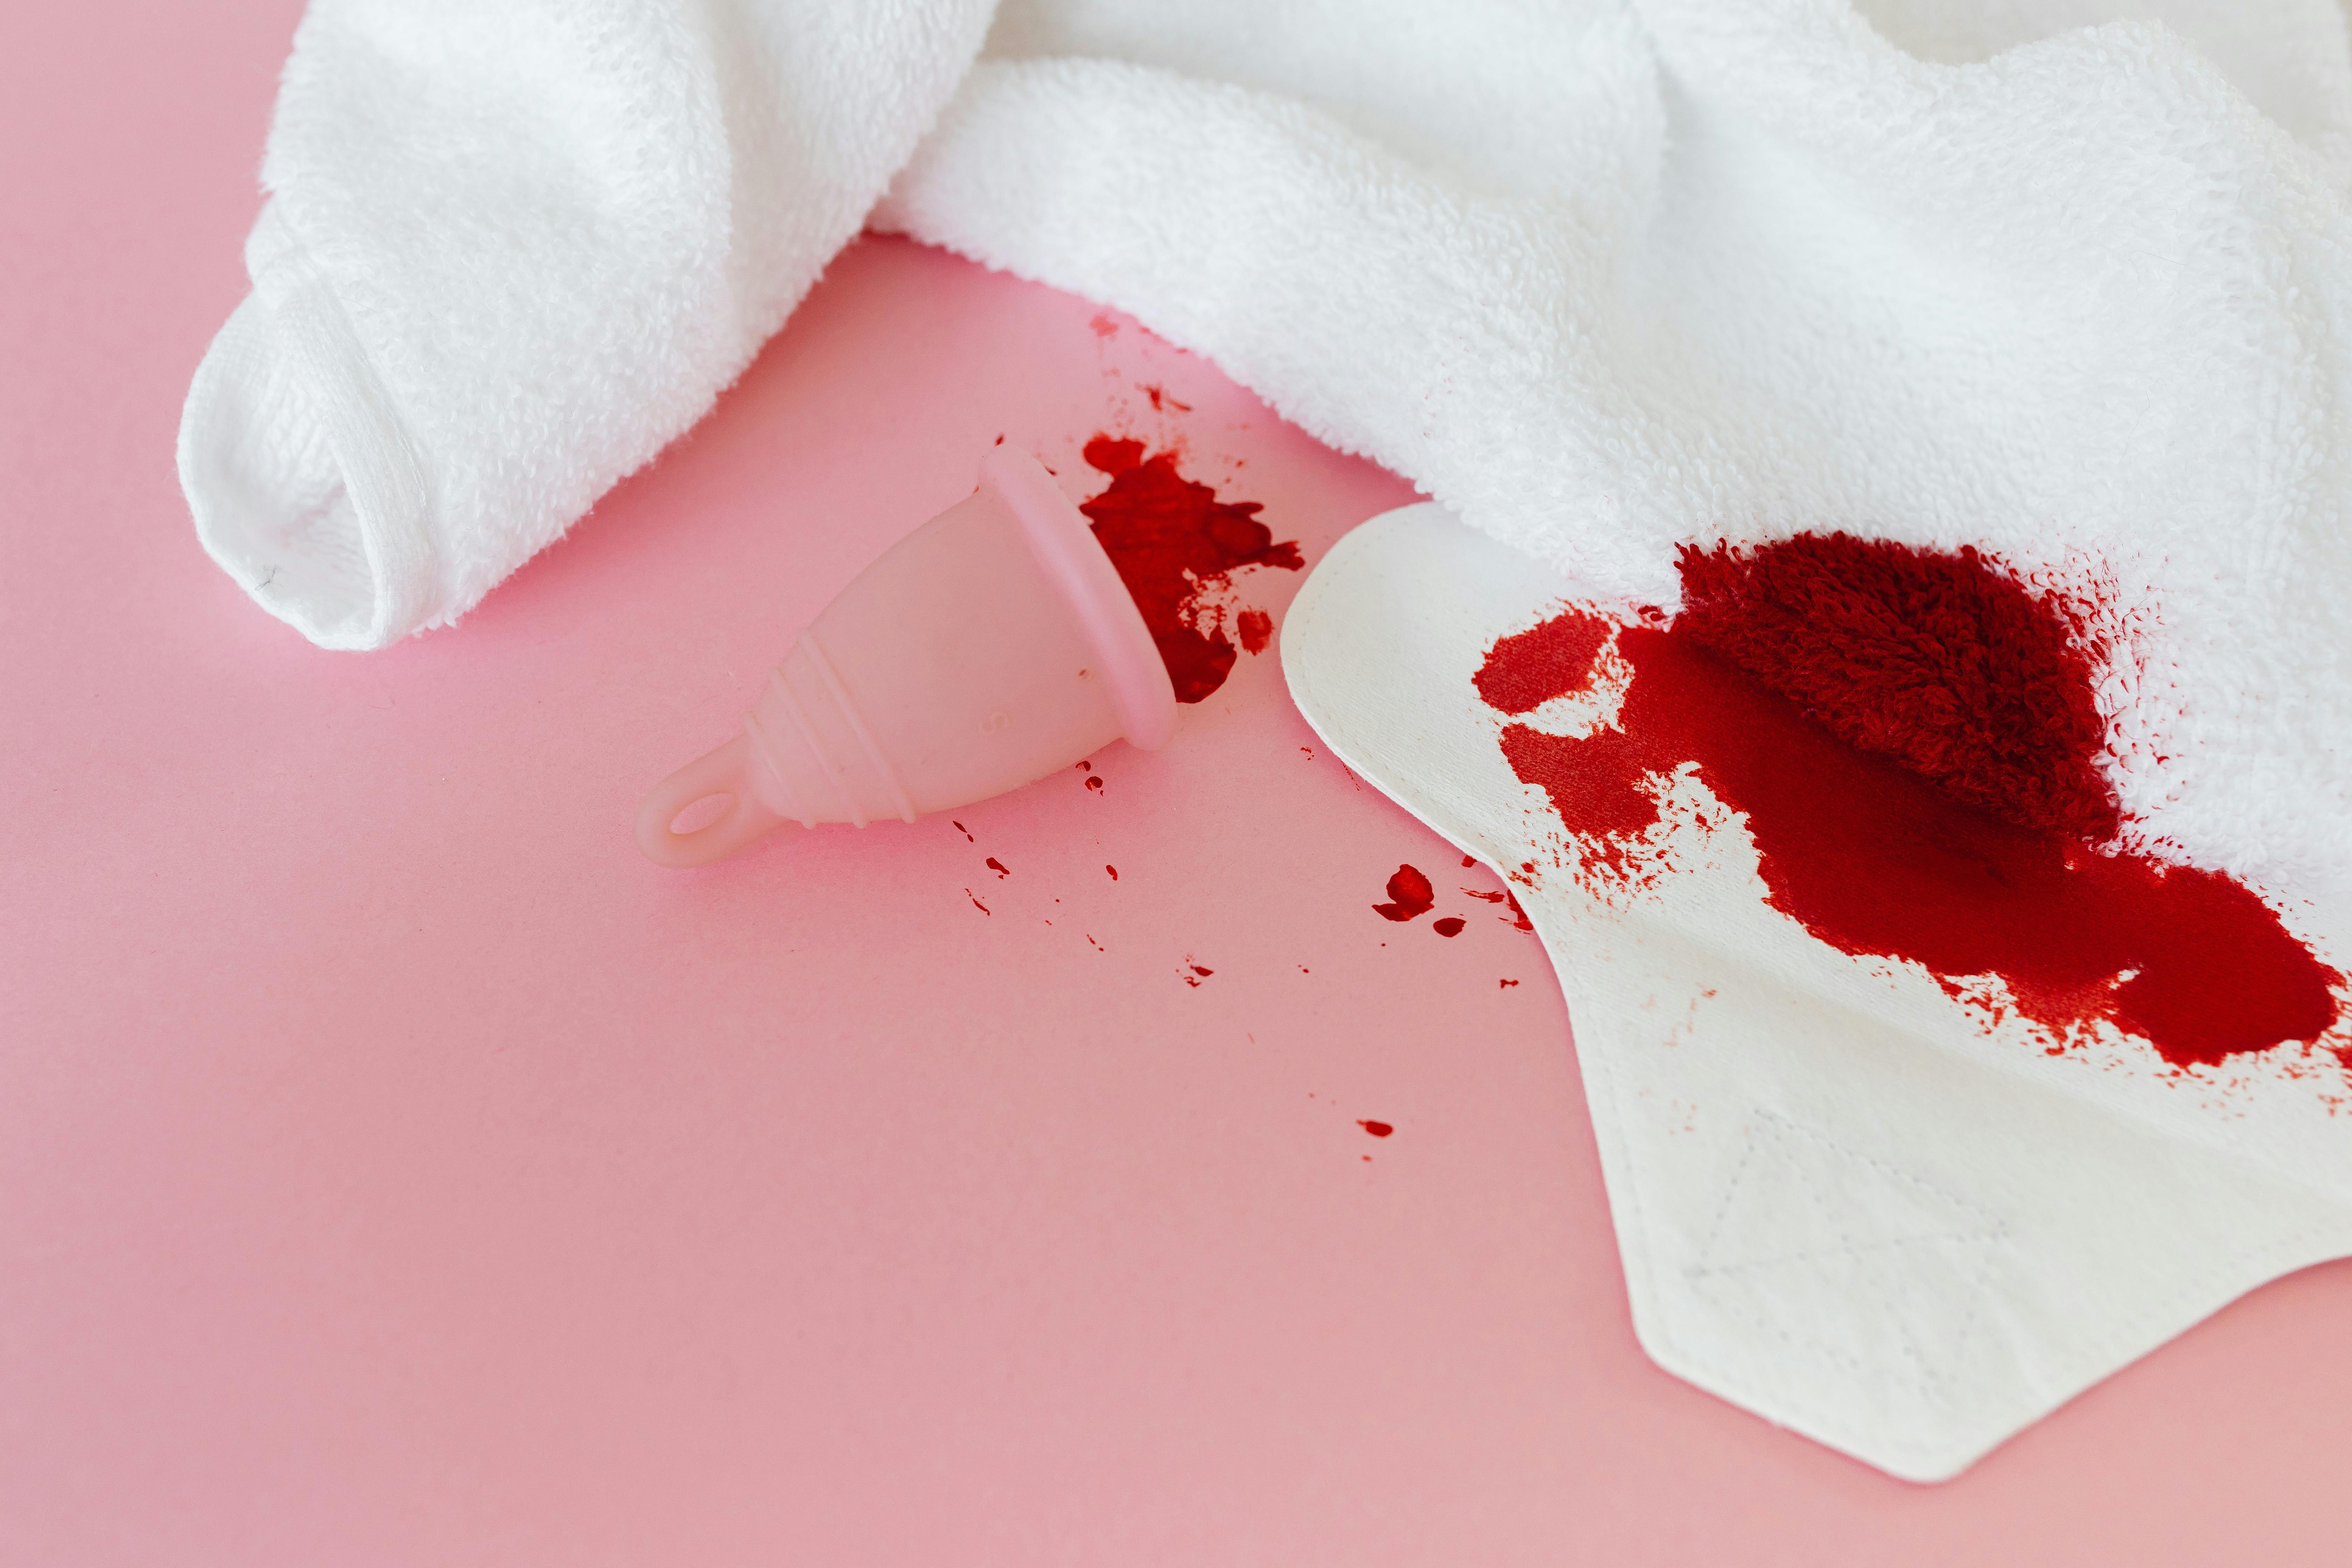 


<h3>FAQ sur l’efficacité et la sécurité</h3>
<p>Les culottes menstruelles ont révolutionné la <b>gestion des menstruations</b> avec une approche axée sur la durabilité et l’efficacité. Ces produits innovants offrent une protection <b>optimale</b> et une <i>sécurité</i> remarquable durant toute la période menstruelle. L’une des préoccupations majeures concerne leur capacité d’absorption et la protection contre les fuites. Les culottes menstruelles sont conçues pour absorber plusieurs fois leur poids, assurant ainsi une protection robuste, tout en offrant le confort d’un sous-vêtement classique.</p>
<p>La question de la <b>sécurité</b> des culottes menstruelles est cruciale. Elles sont fabriquées à partir de matériaux testés dermatologiquement et qui respectent la <i>sensibilité</i> de la zone intime. L’utilisation de tissus anti-bactériens et respirants contribue à maintenir un environnement sain, minimisant ainsi les risques d’irritations et d’infections.</p>
<h3>Résolution des doutes et préoccupations</h3>
<p>Naviguer à travers les différentes <i>options</i> de produits menstruels peut soulever de nombreuses questions. Les consommateurs s’interrogent souvent sur la durée de vie des culottes menstruelles, leur entretien et leur <b>impact environnemental</b>. Il est essentiel de fournir des informations précises et fiables qui éclaircissent ces doutes, permettant ainsi de faire des choix éclairés basés sur des données factuelles et des <b>retours d’expérience</b> concrets.</p>
<p>Le <b>nettoyage</b> des culottes menstruelles est une préoccupation courante, mais elles sont étonnamment faciles à entretenir. Il suffit de les rincer à l’eau froide après utilisation, puis de les laver en machine avec le reste de votre linge. Cela démontre non seulement leur <i>praticité</i>, mais aussi leur capacité à s’intégrer sans effort dans les routines quotidiennes, favorisant ainsi leur adoption et leur utilisation à long terme.</p>
<p> » /><br />
Dans l’univers des produits menstruels durables, les culottes menstruelles émergent comme une <b>alternative innovante</b> et écologique. Les consommateurs se posent naturellement de nombreuses questions sur leur fonctionnement, leur efficacité et leur entretien. Ce chapitre se propose de démystifier ces aspects en offrant un <b><a href=